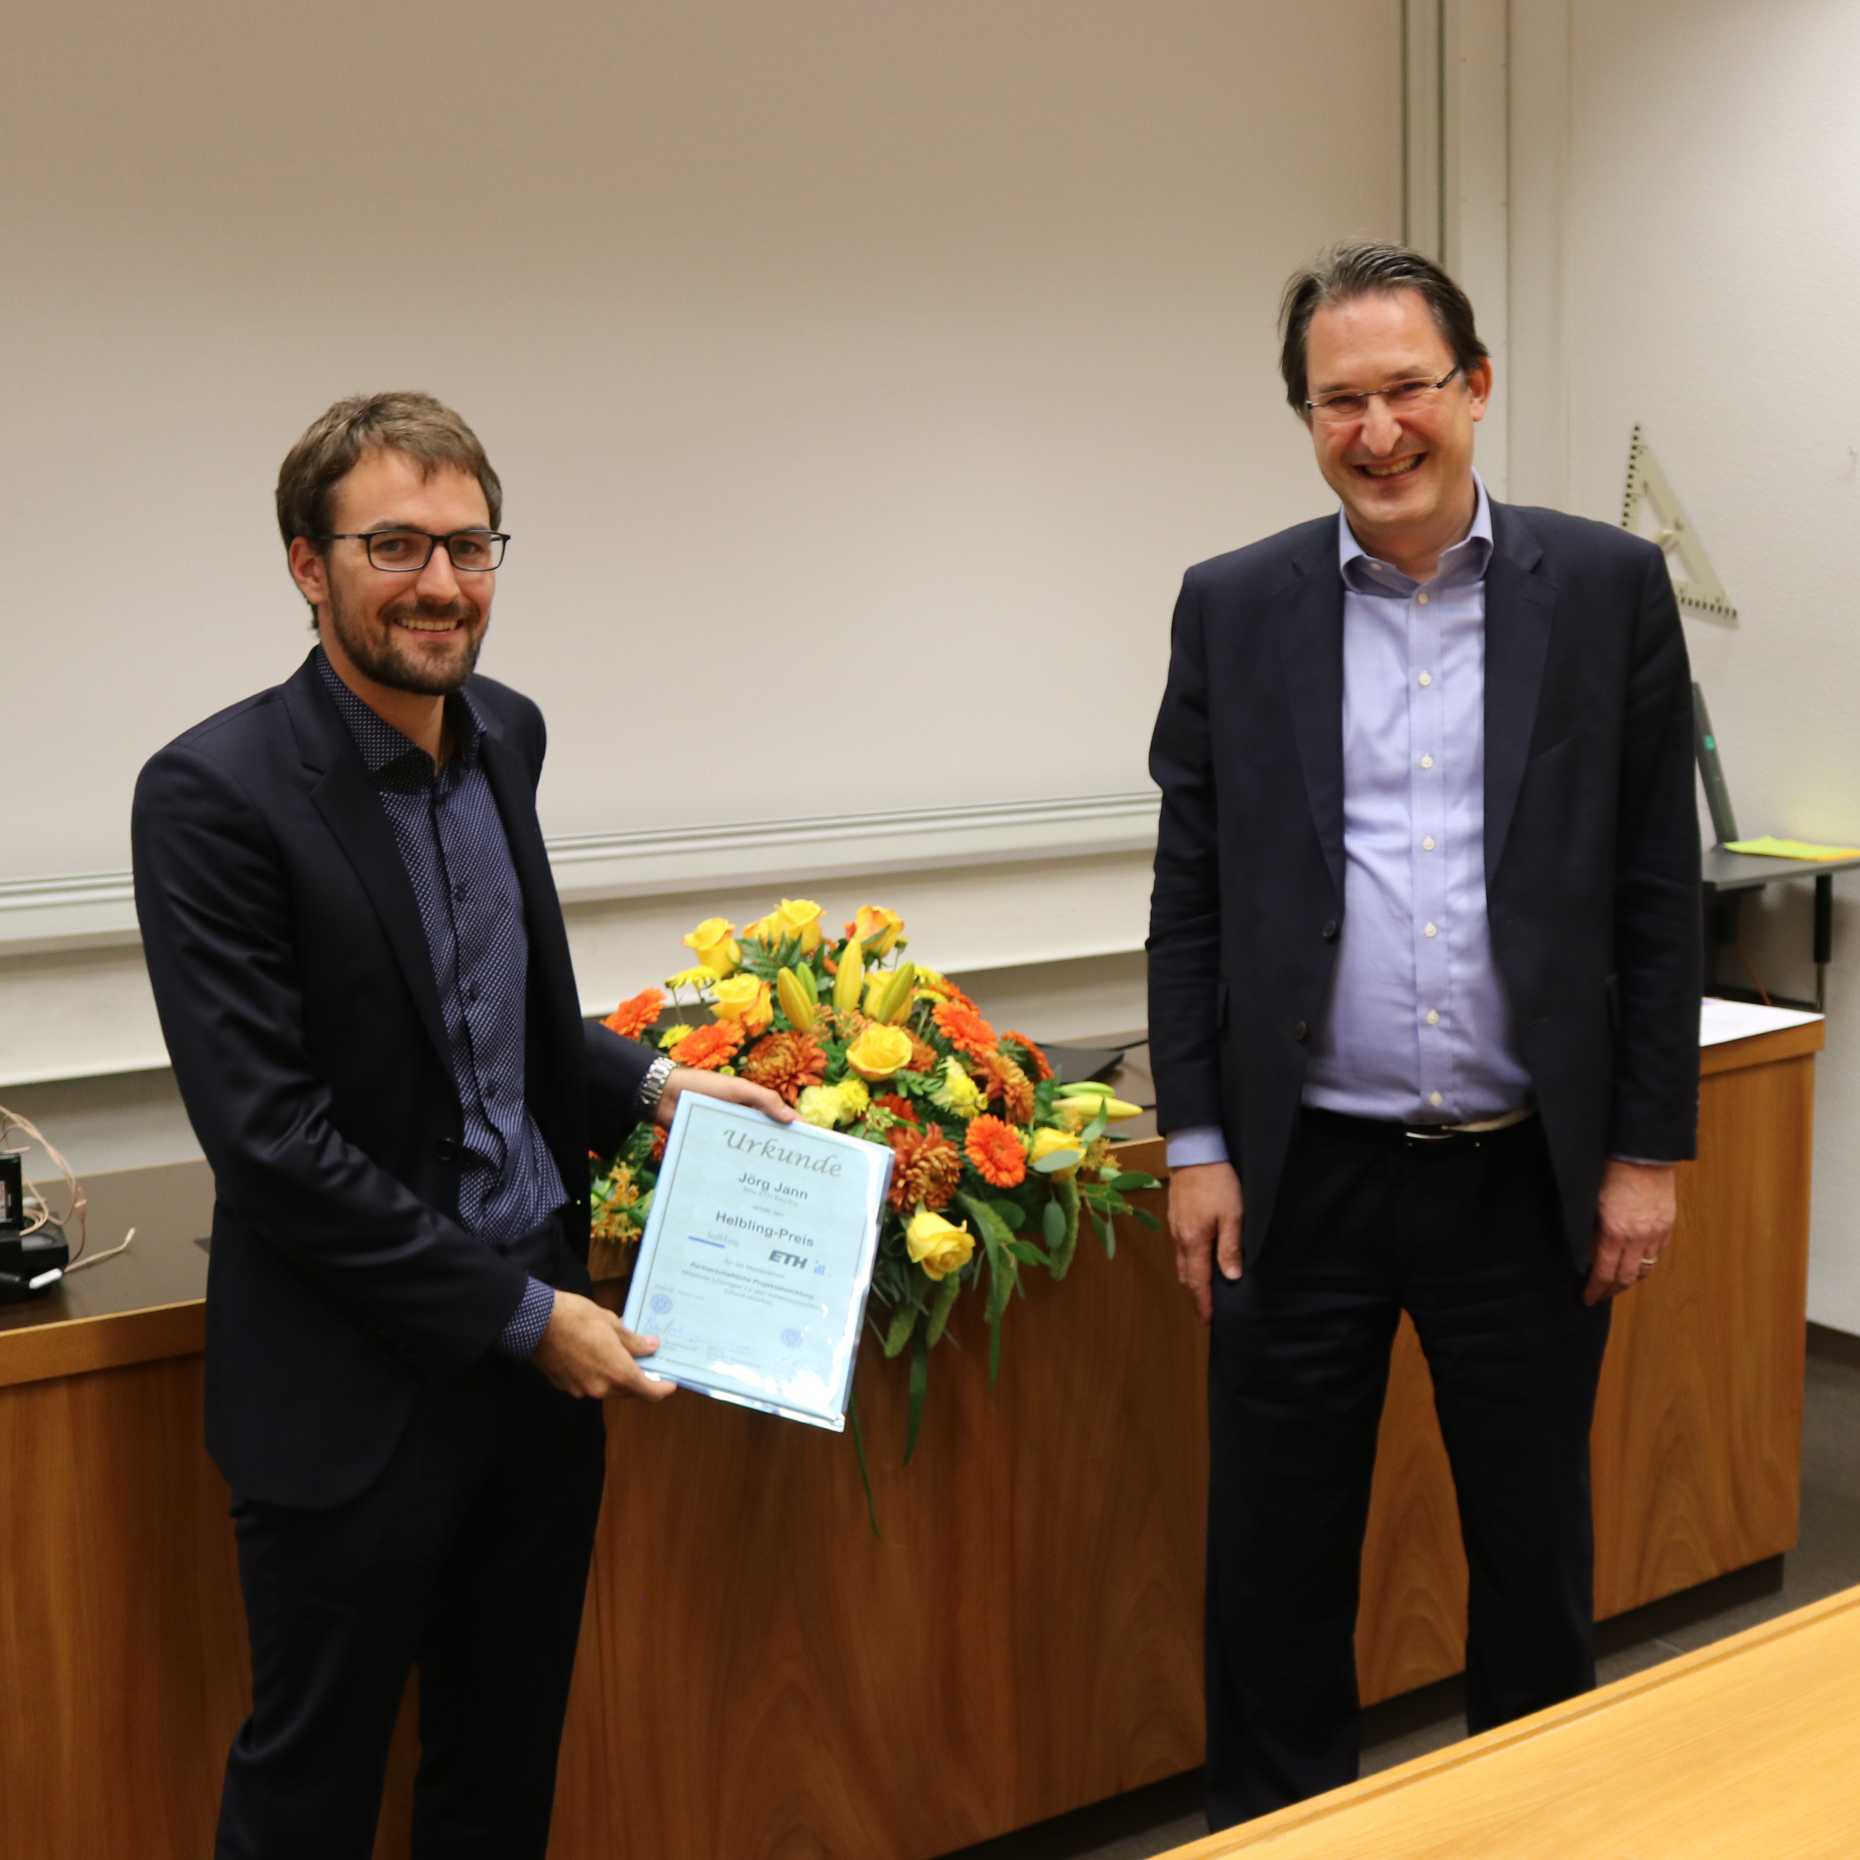 Enlarged view: Philipp Stoffel, Helbling, awards Jörg Jann